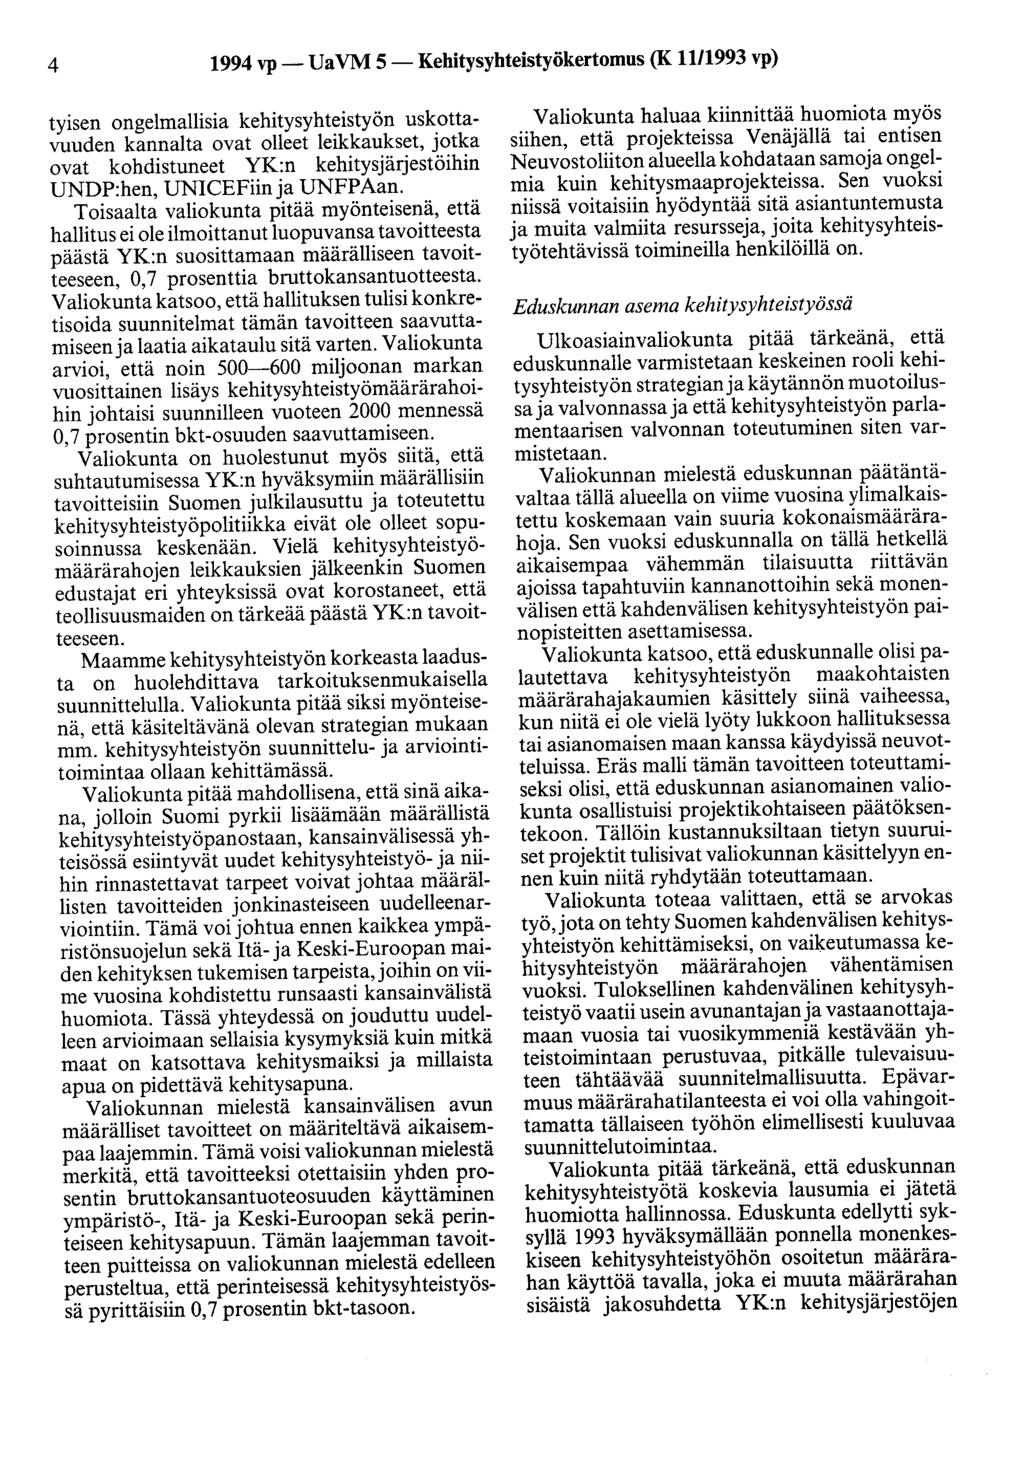 4 1994 vp- UaVM 5-Kehitysyhteistyökertomus (K 11/1993 vp) tyisen ongelmallisia kehitysyhteistyön uskottavuuden kannalta ovat olleet leikkaukset, jotka ovat kohdistuneet YK:n kehitysjärjestöihin